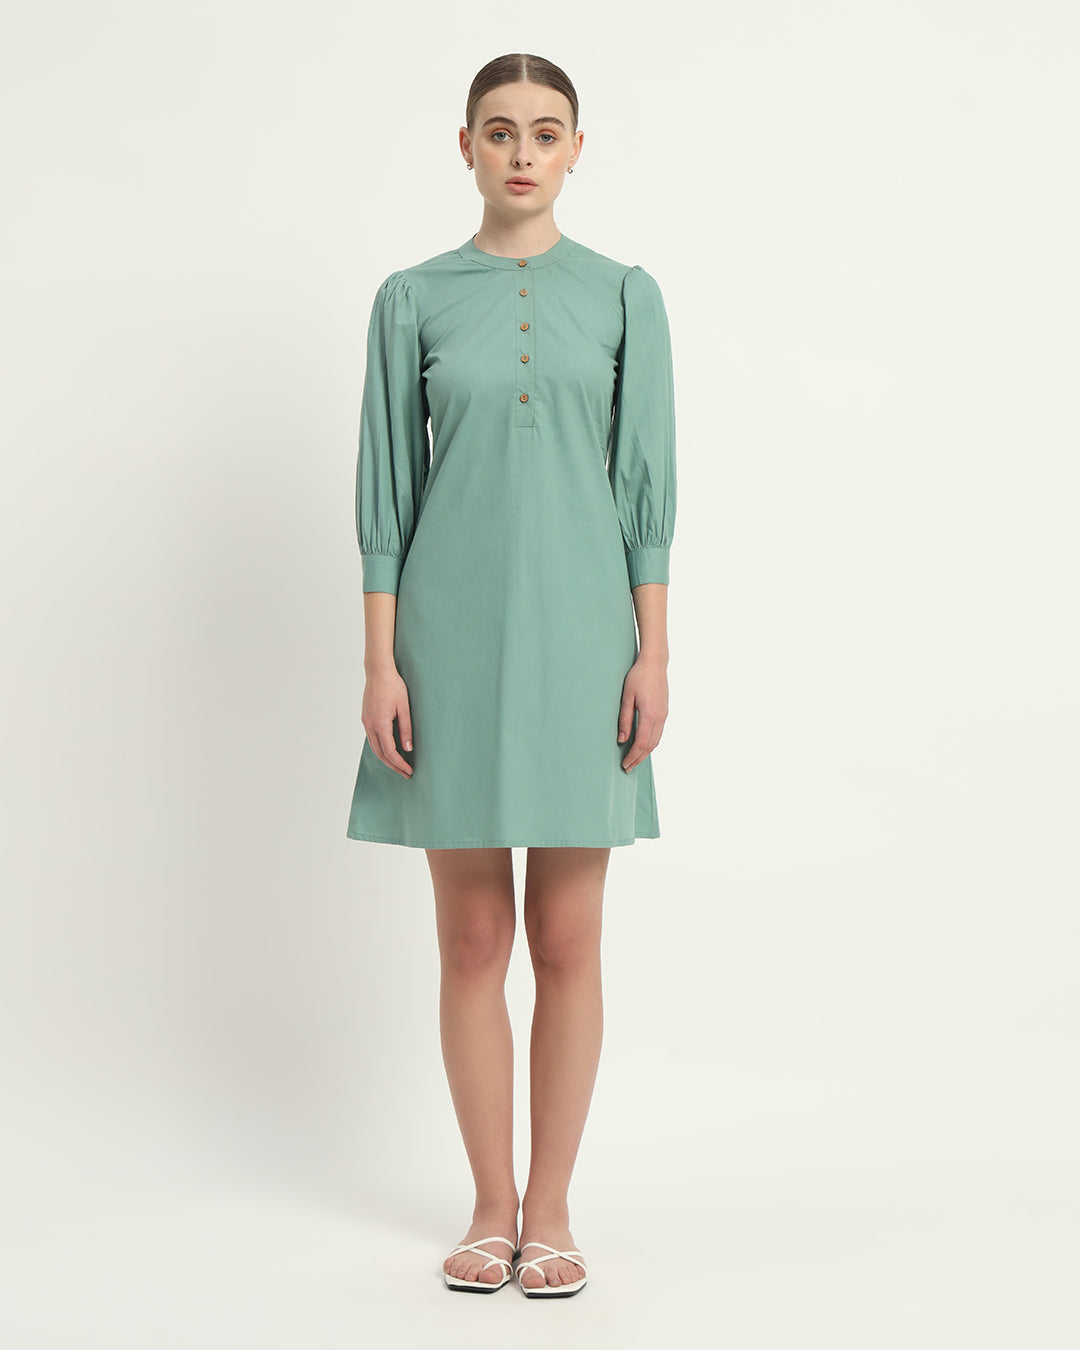 The Roslyn Mint Cotton Dress